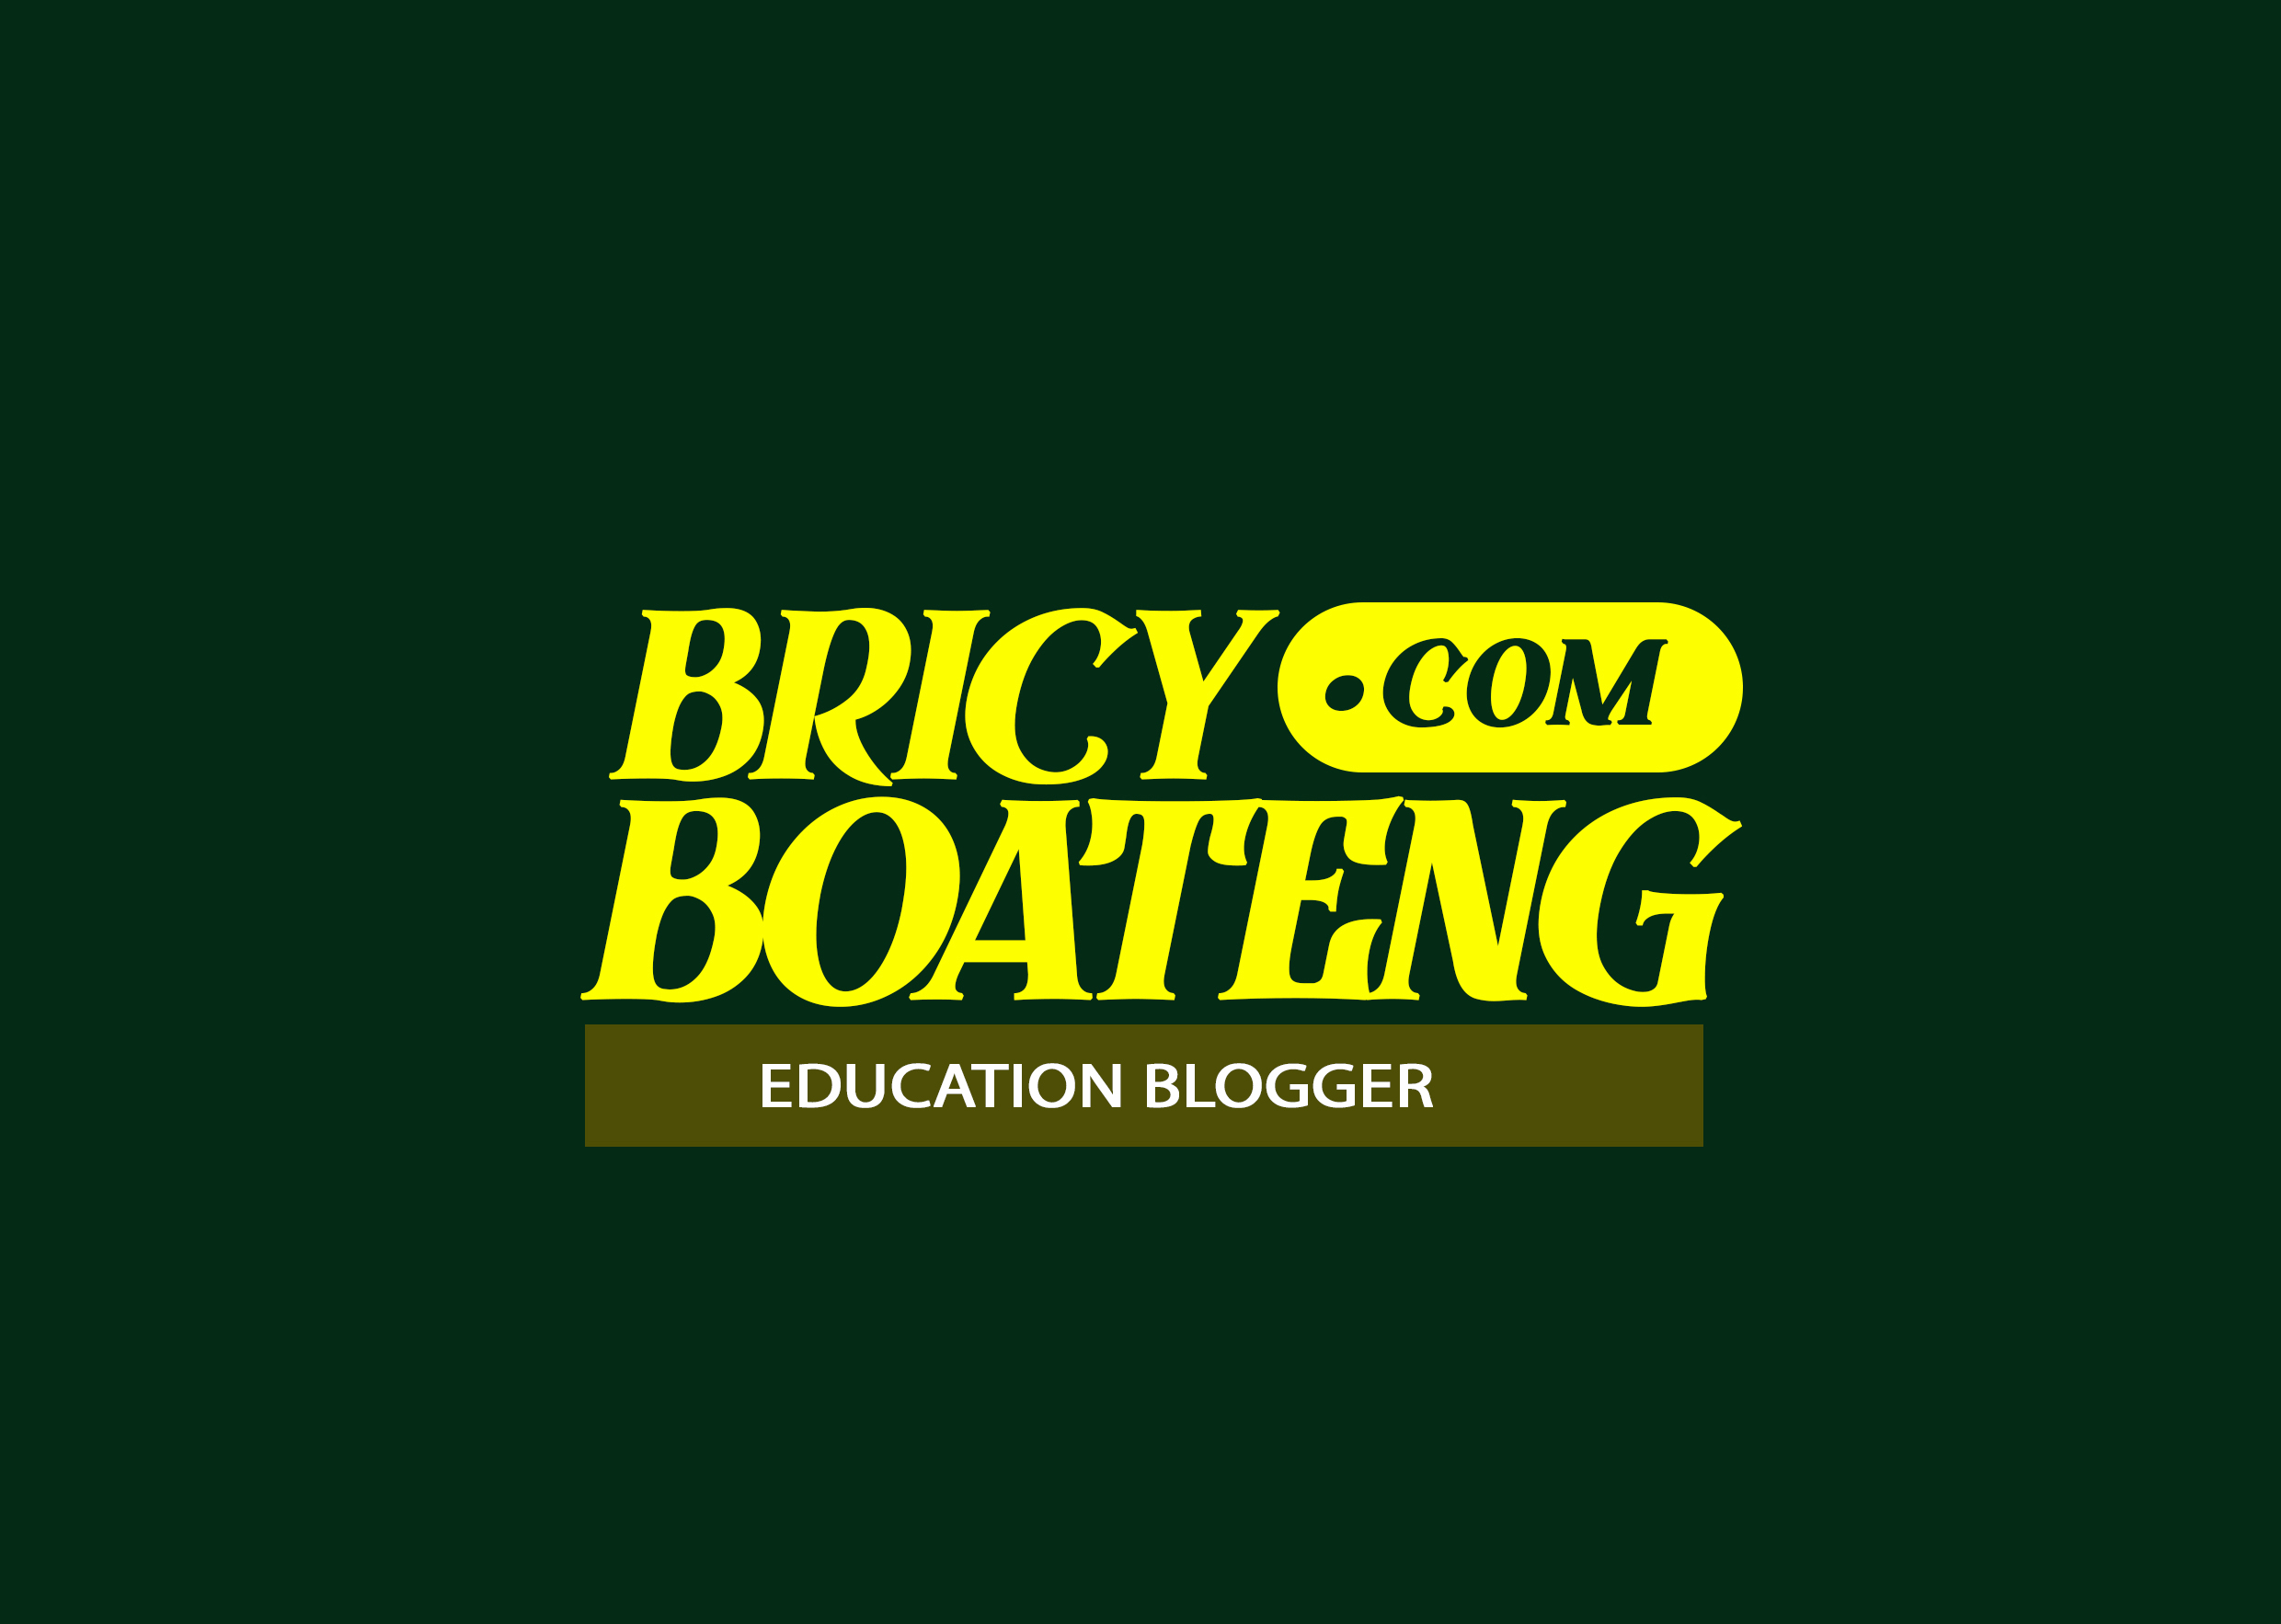 Bricy Boateng